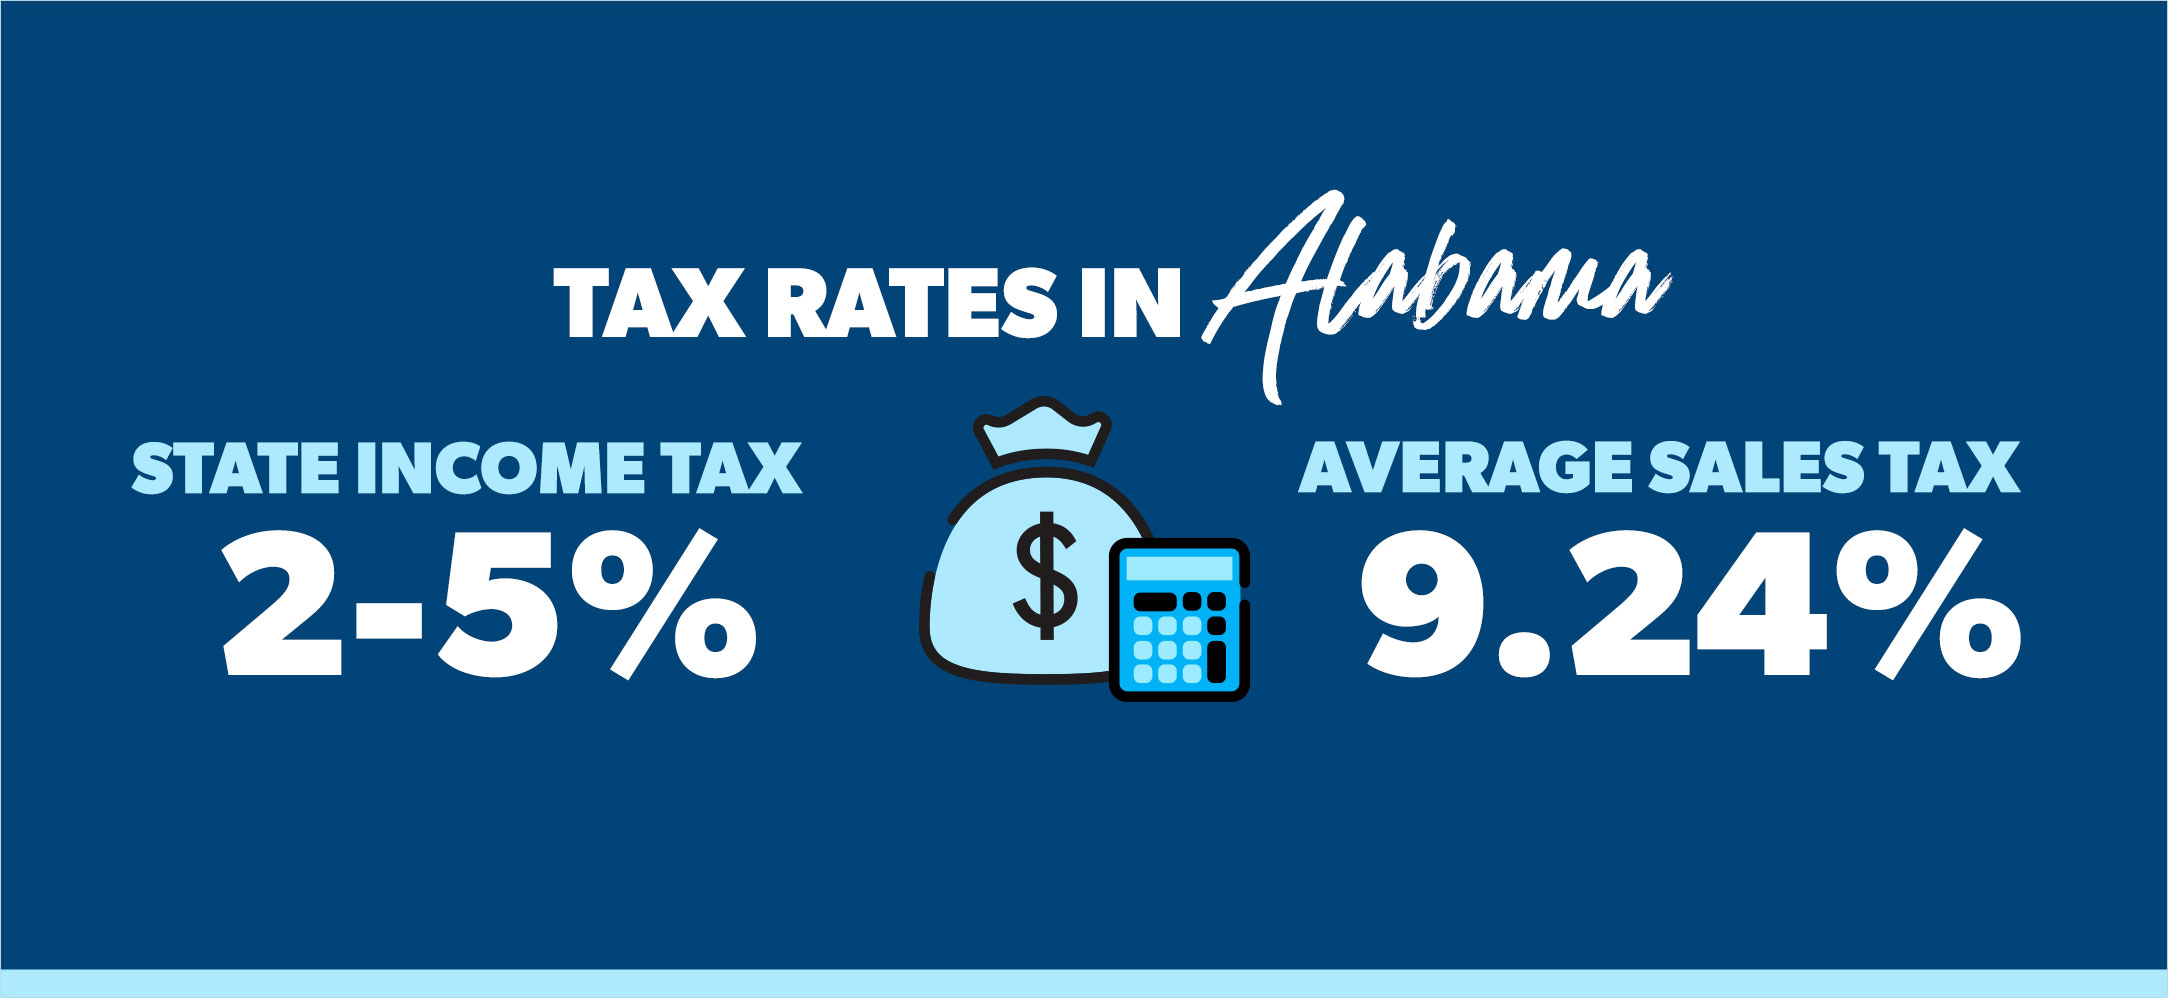 tax rates in Alabama